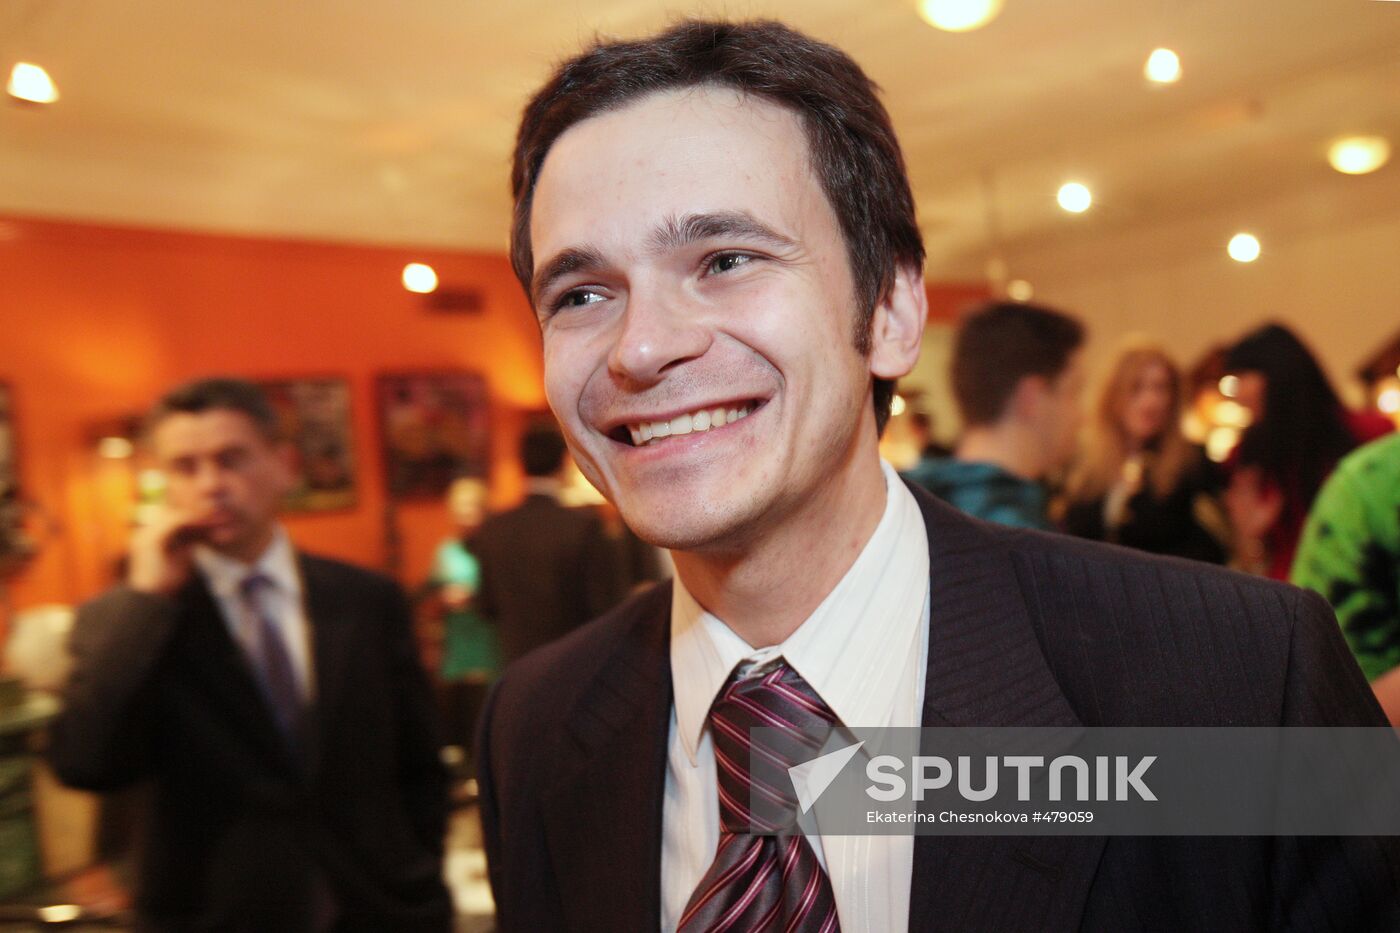 Ilya Yashin | Sputnik Mediabank